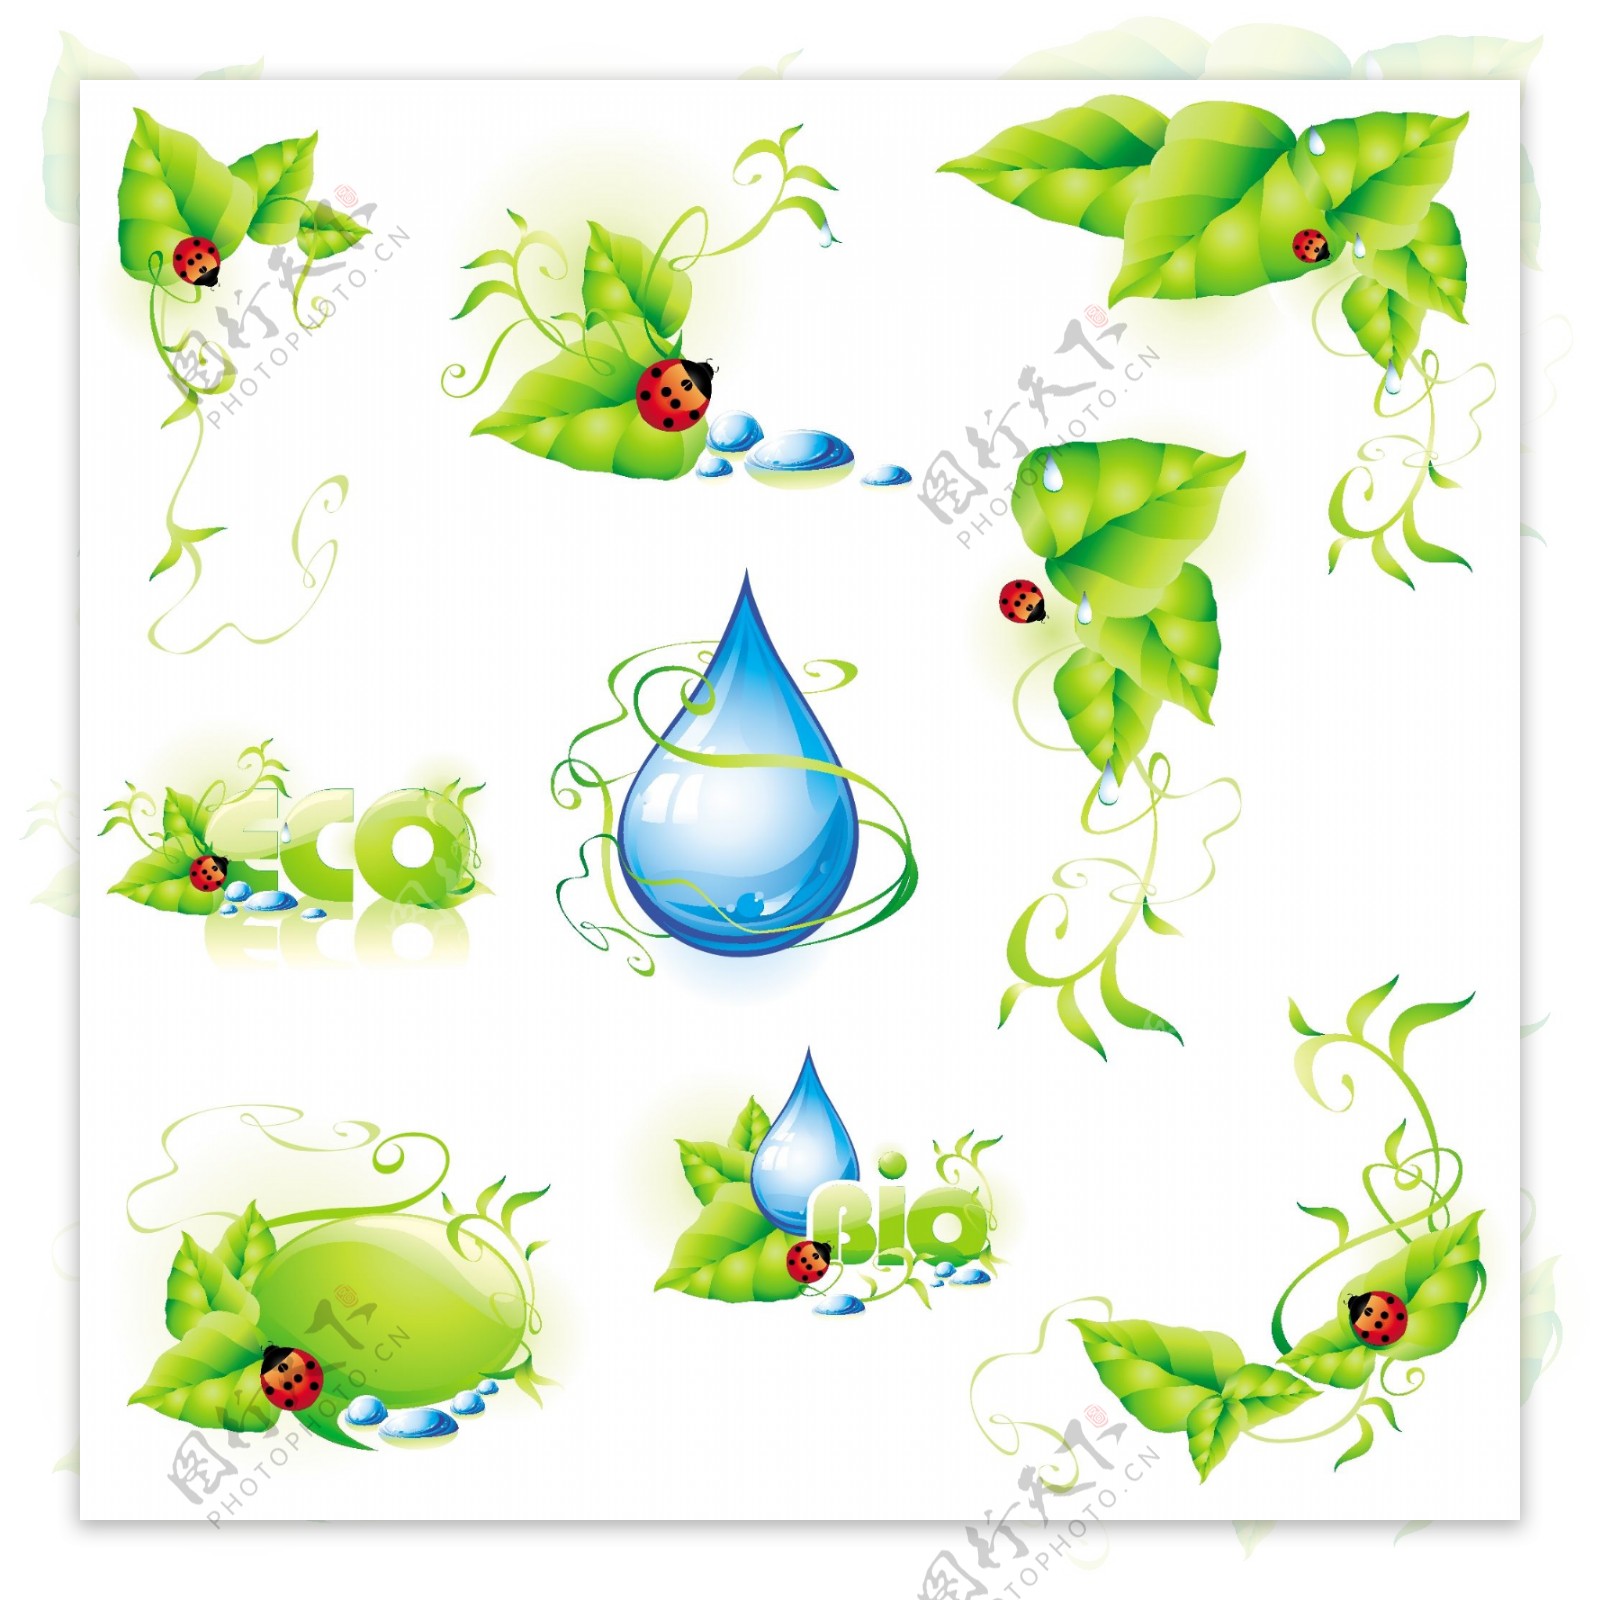 瓢虫与绿叶水滴矢量素材